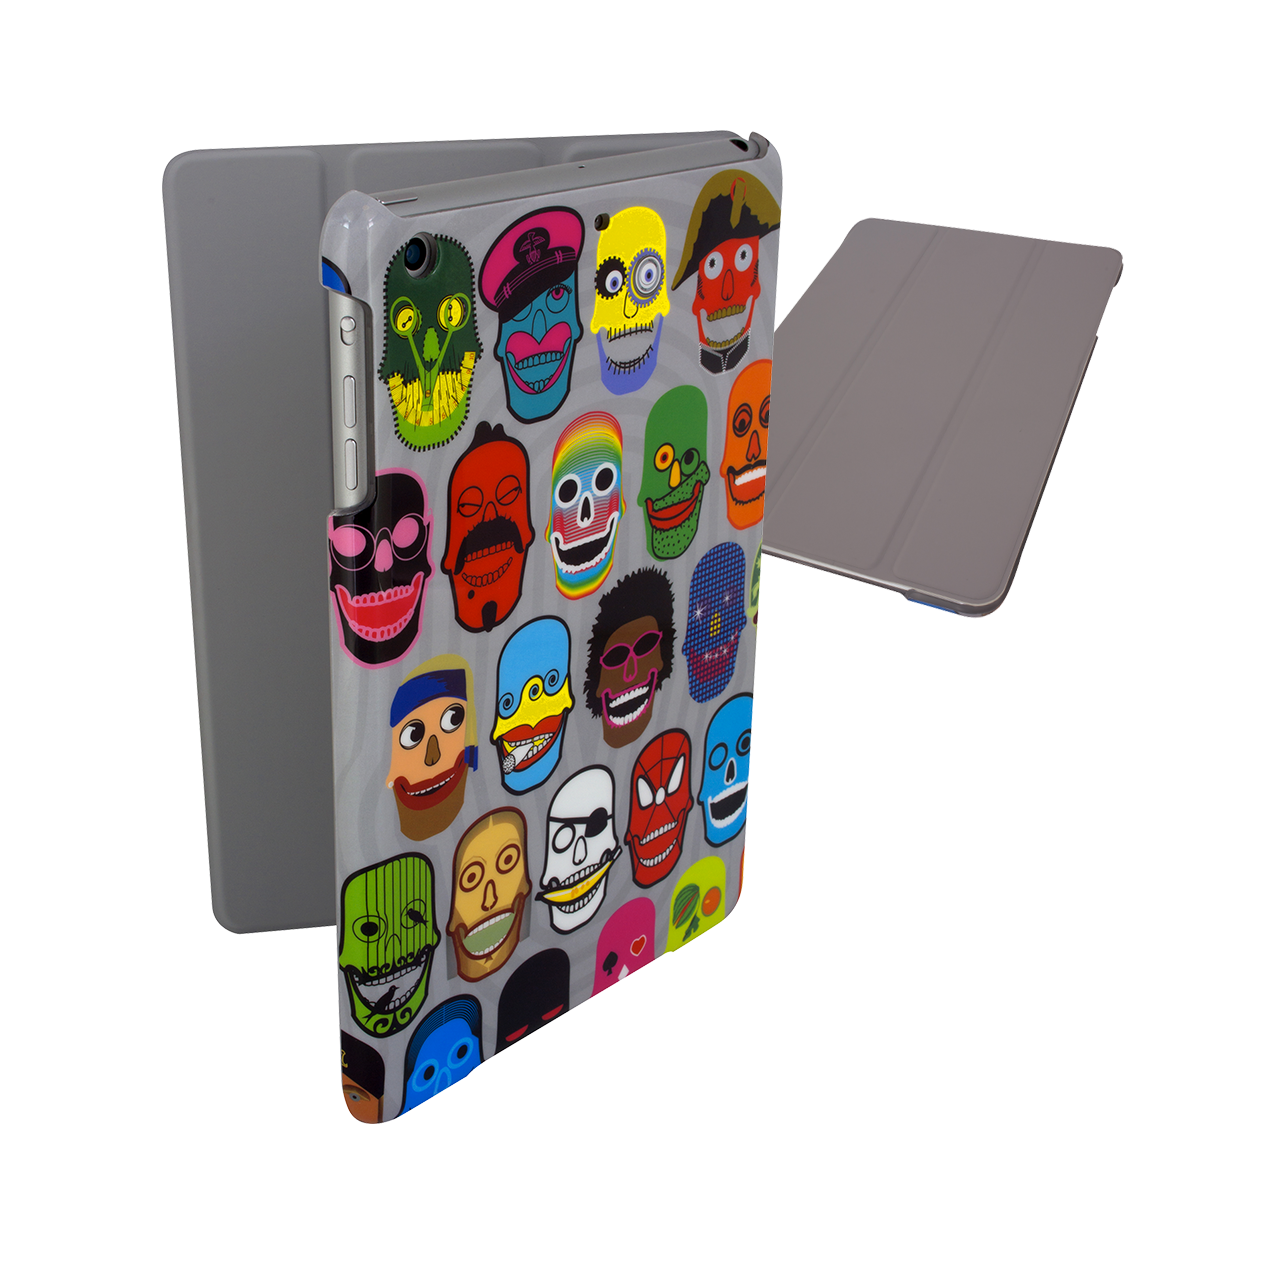 Coque pour iPad mini 2 et 3 original - I Smart Cover - Skull 3 - Pylones